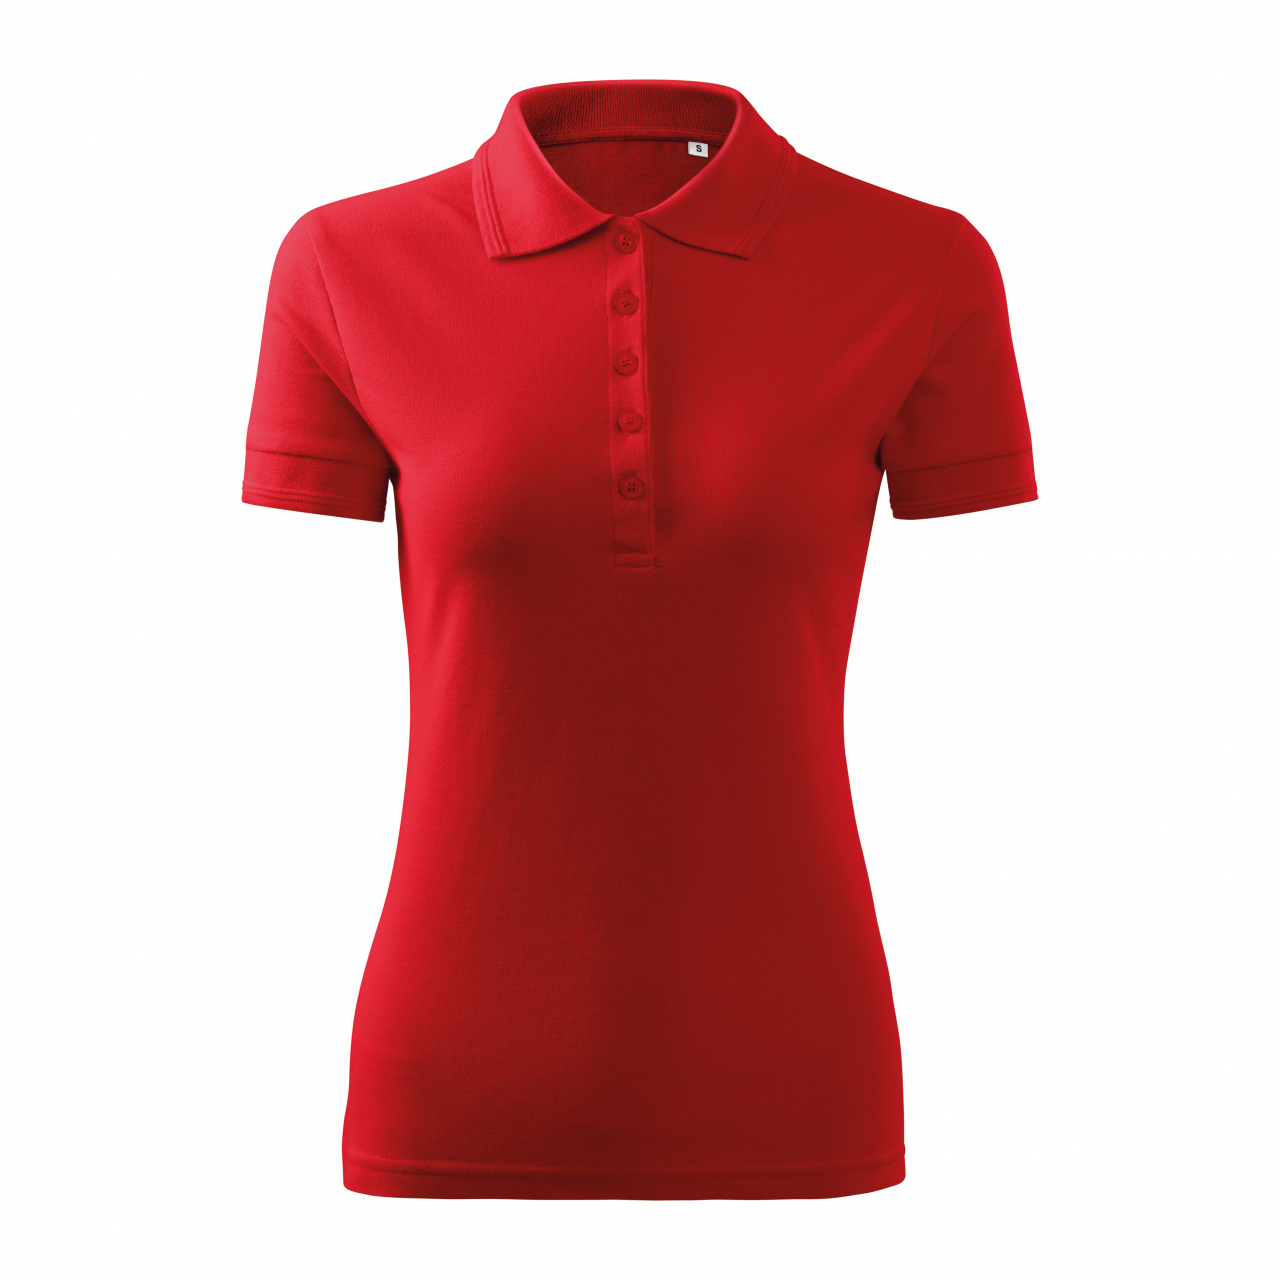 Polokošile dámská Malfini Pique Polo Free - červená, XL